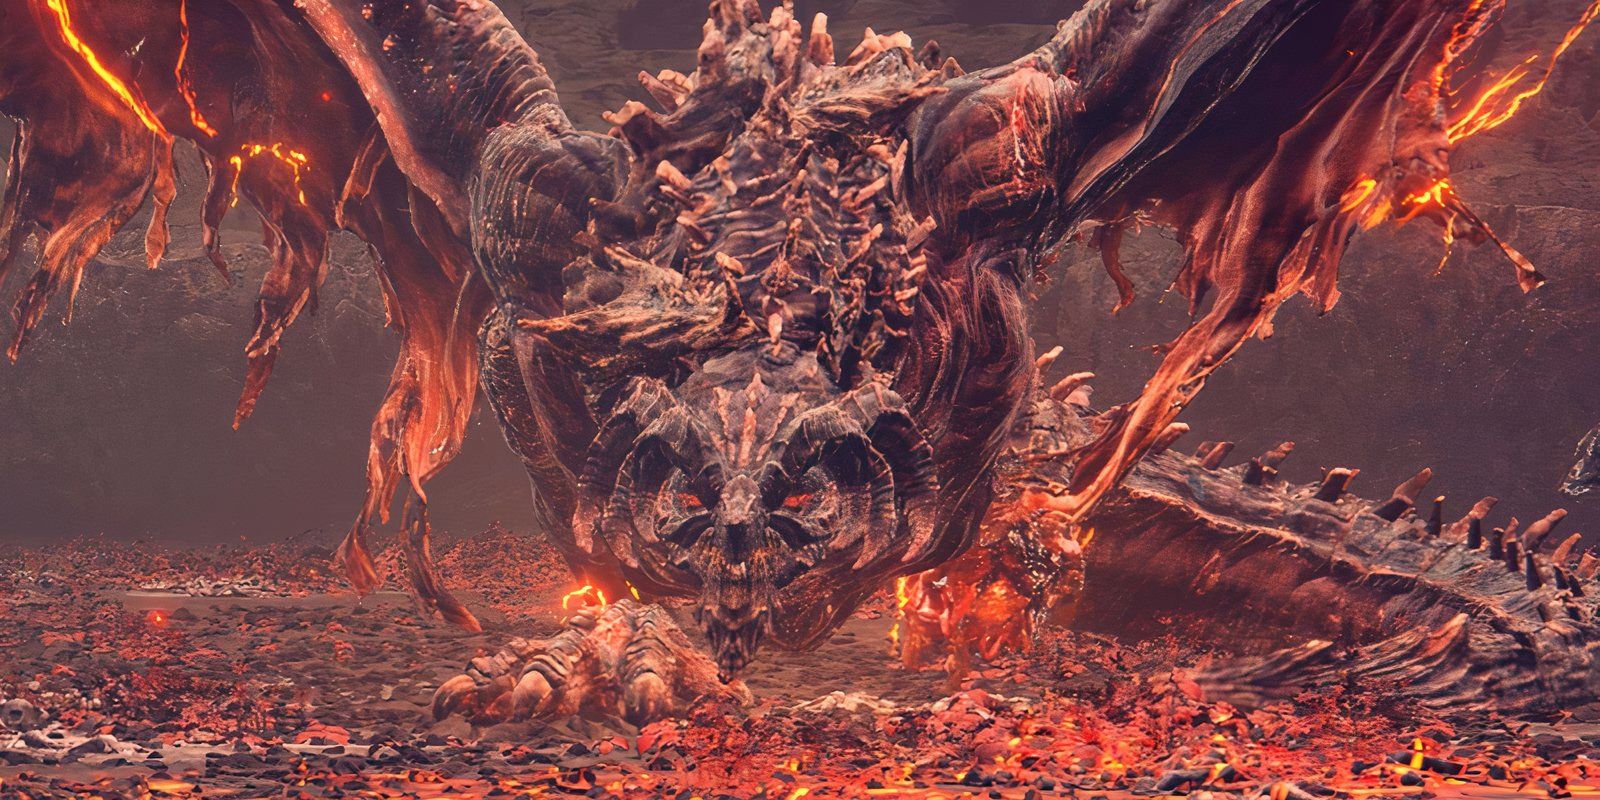 Um Bayle carrancudo, um dragão vermelho e preto, em uma captura de tela do DLC de Elden Ring.